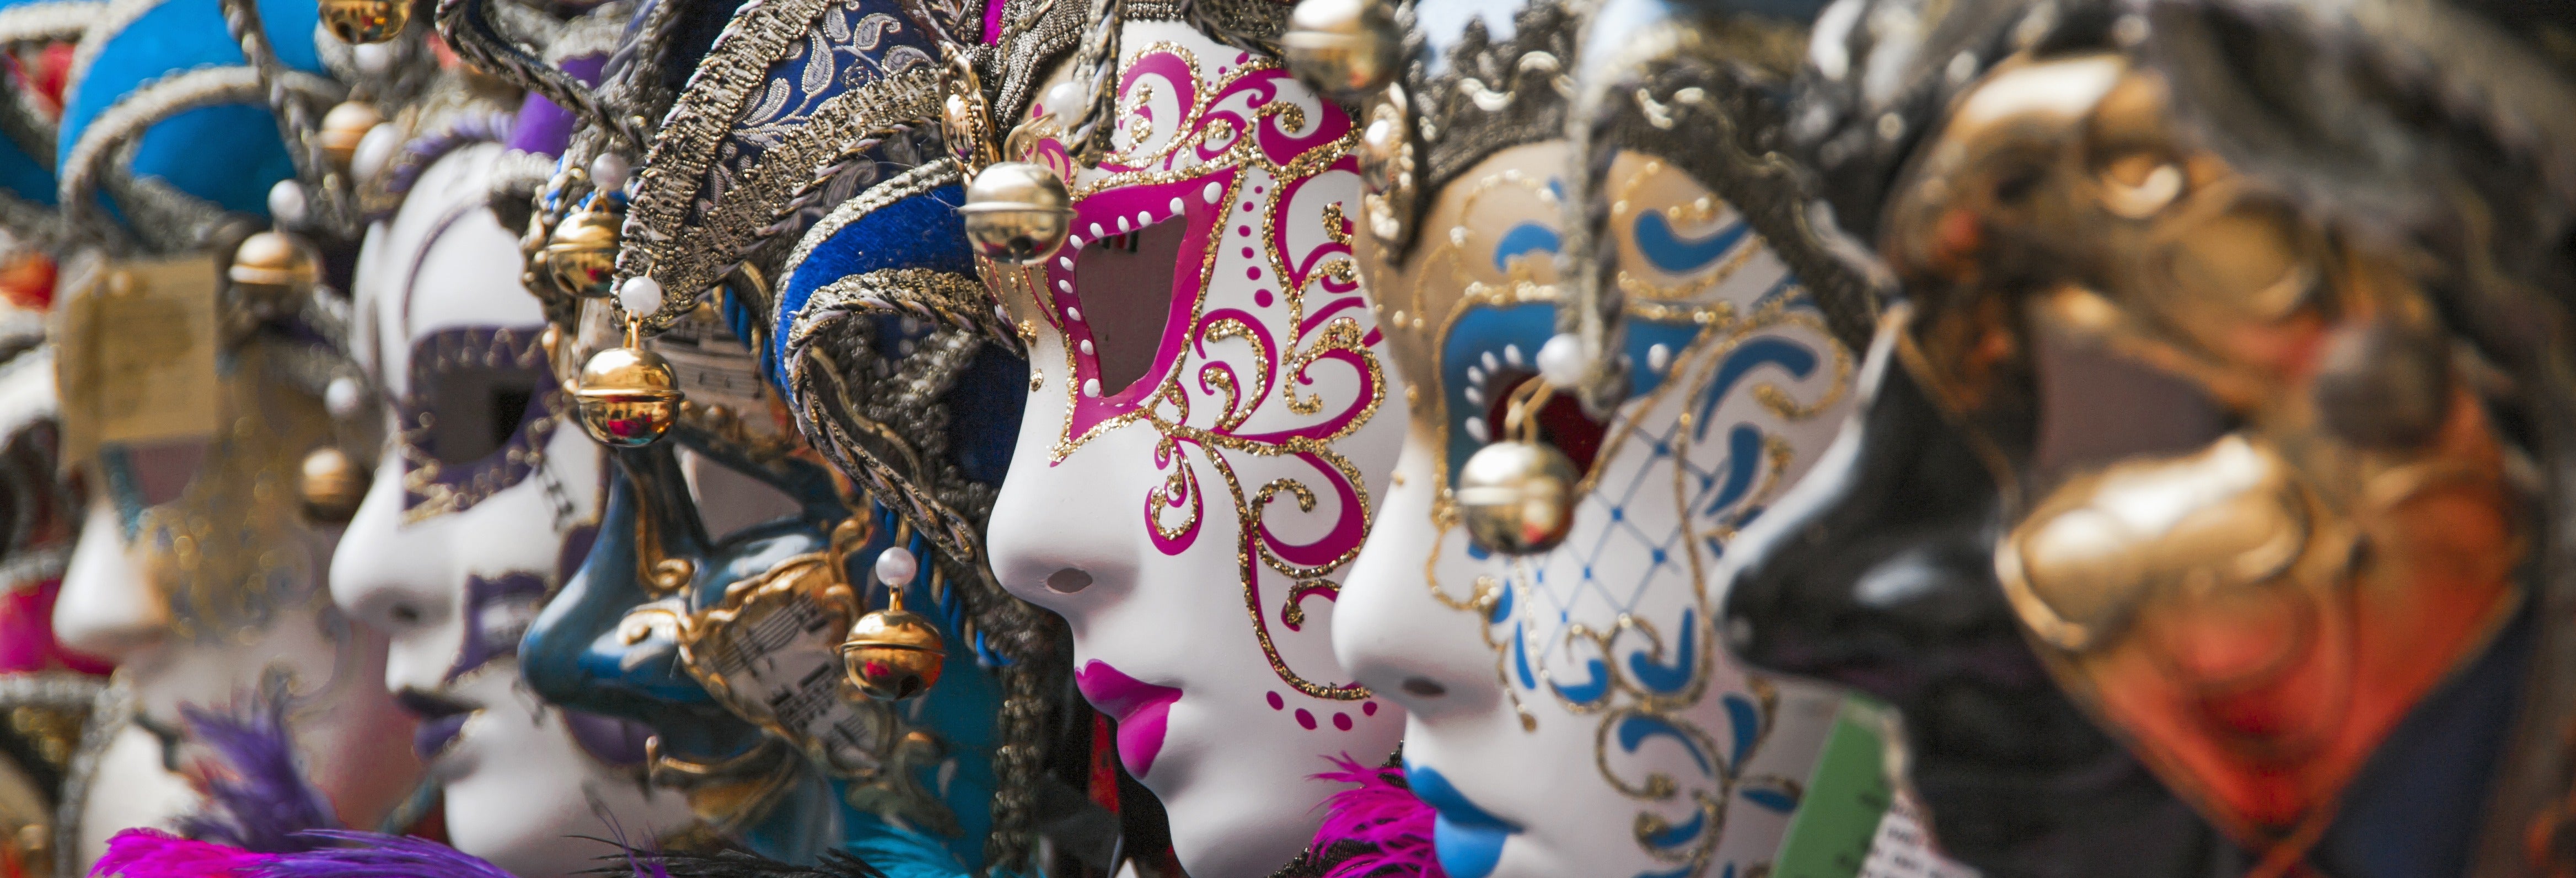 Festa di Carnevale sul Galeone Veneziano